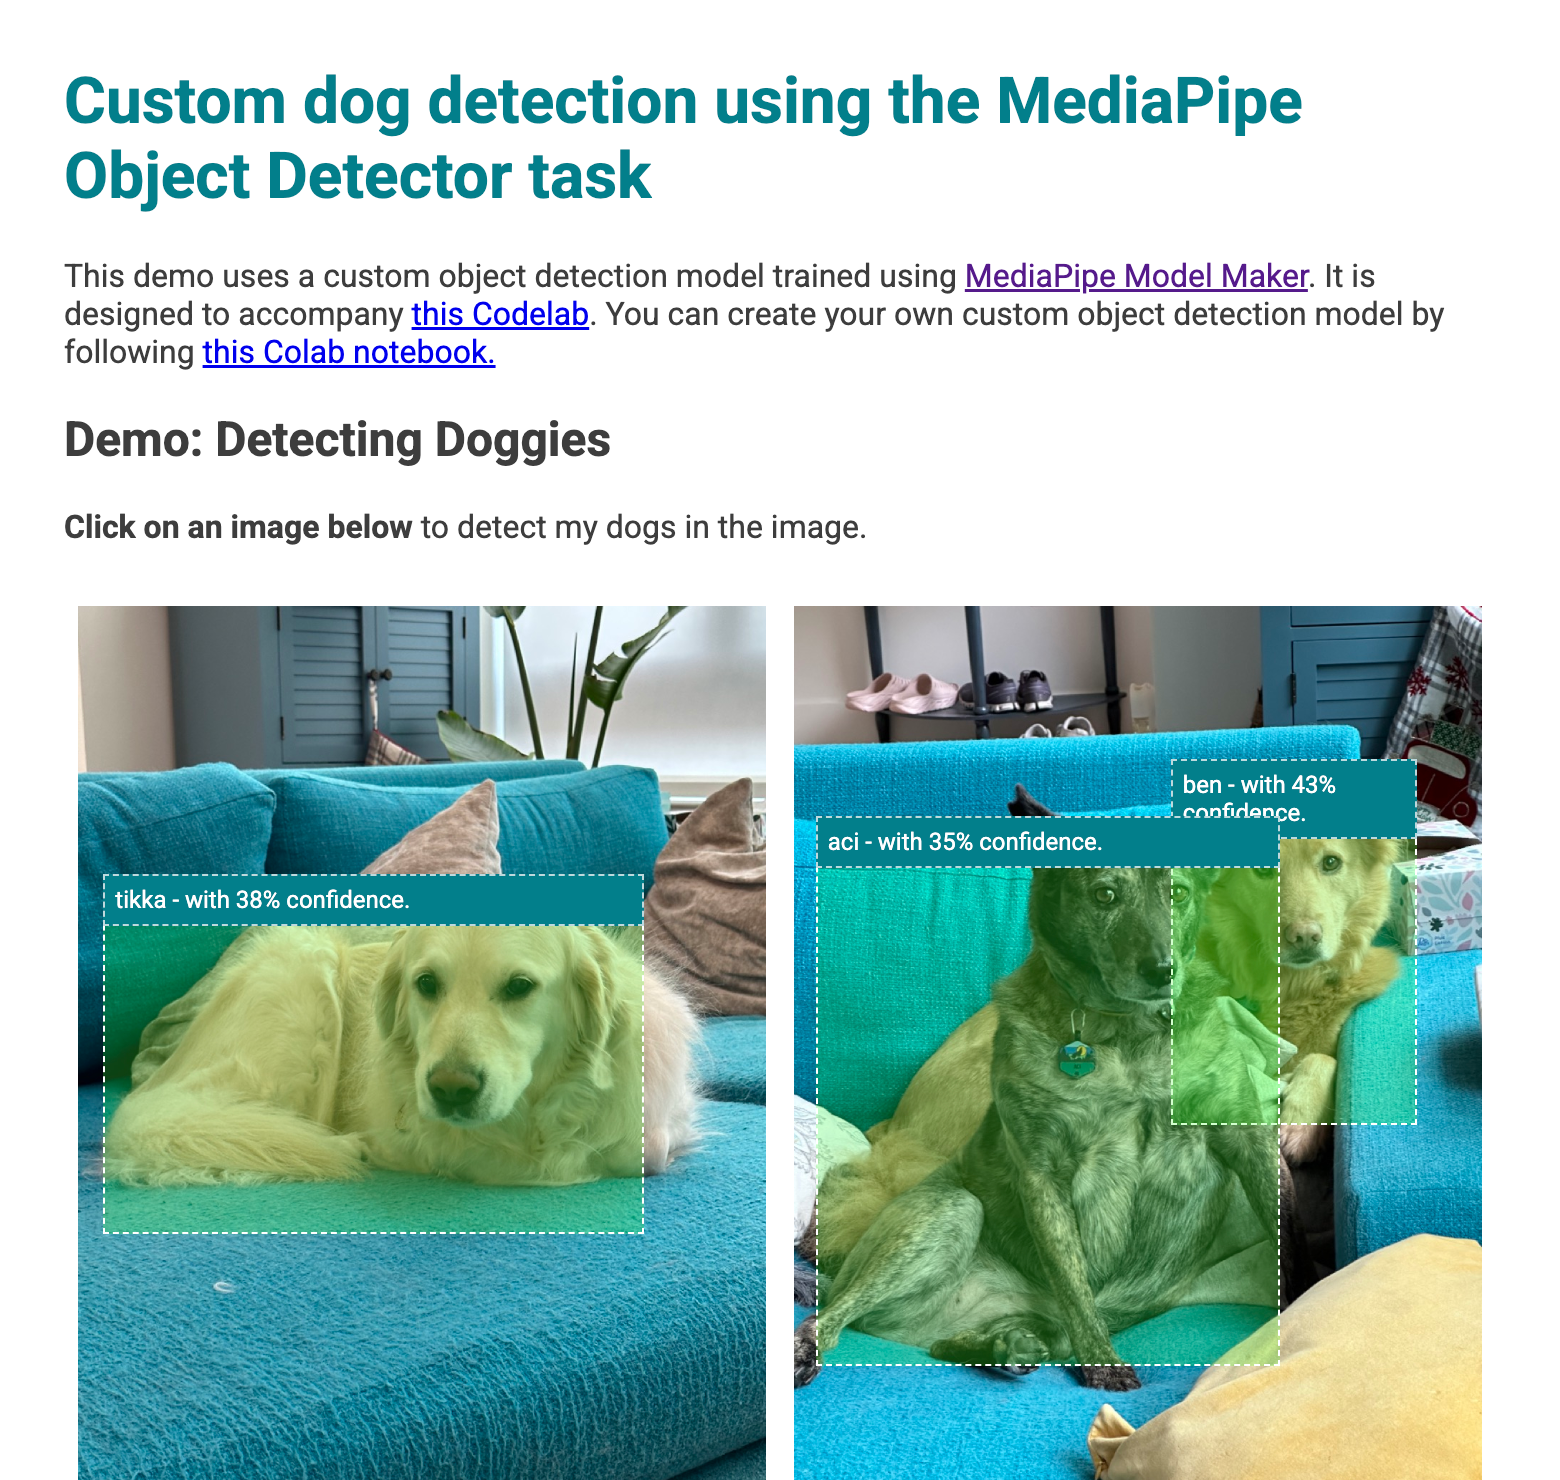 ウェブアプリのプレビュー。画像から検出した犬の上に境界ボックスが表示されています。